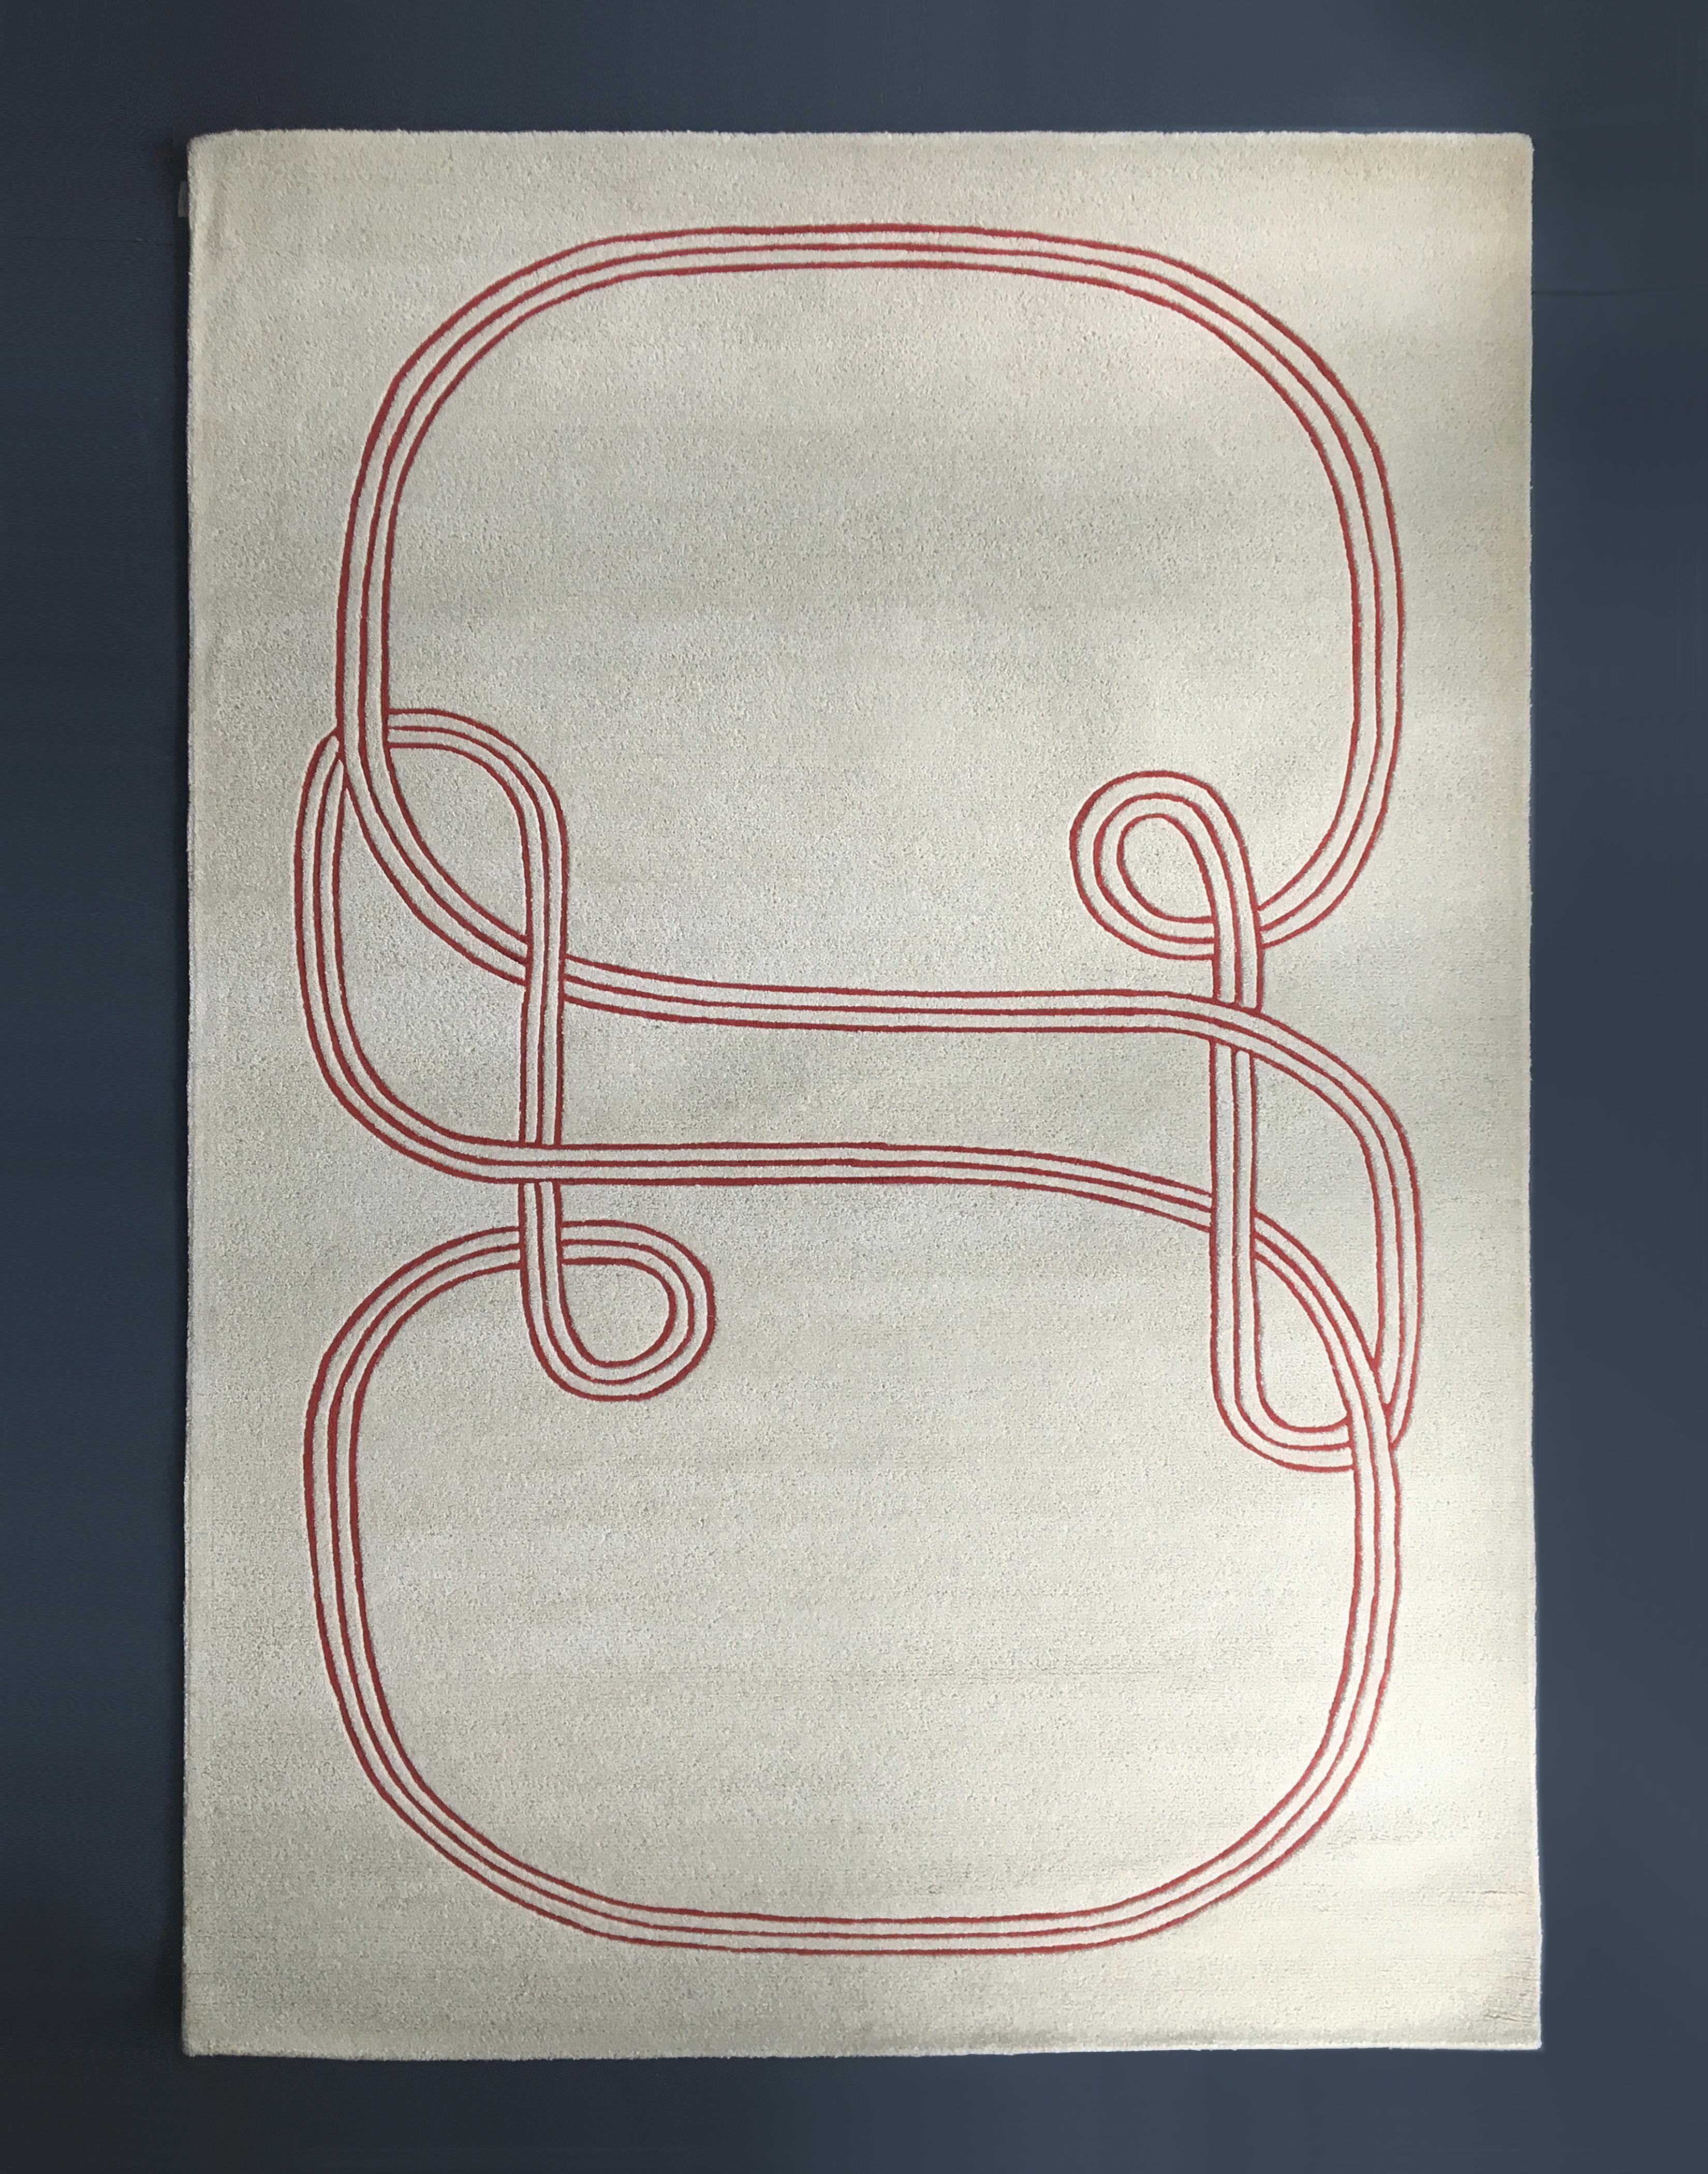 Boucle-Teppich von SB26
Abmessungen: B 320 x H 200 cm
MATERIALIEN: Getuftete Naturwolle.

Inspiriert durch eine grafische Recherche von Samuels Zeichnungen, wird dieser Teppich in Nordindien hergestellt.

SB26 ist die Marke, die 2018 von dem